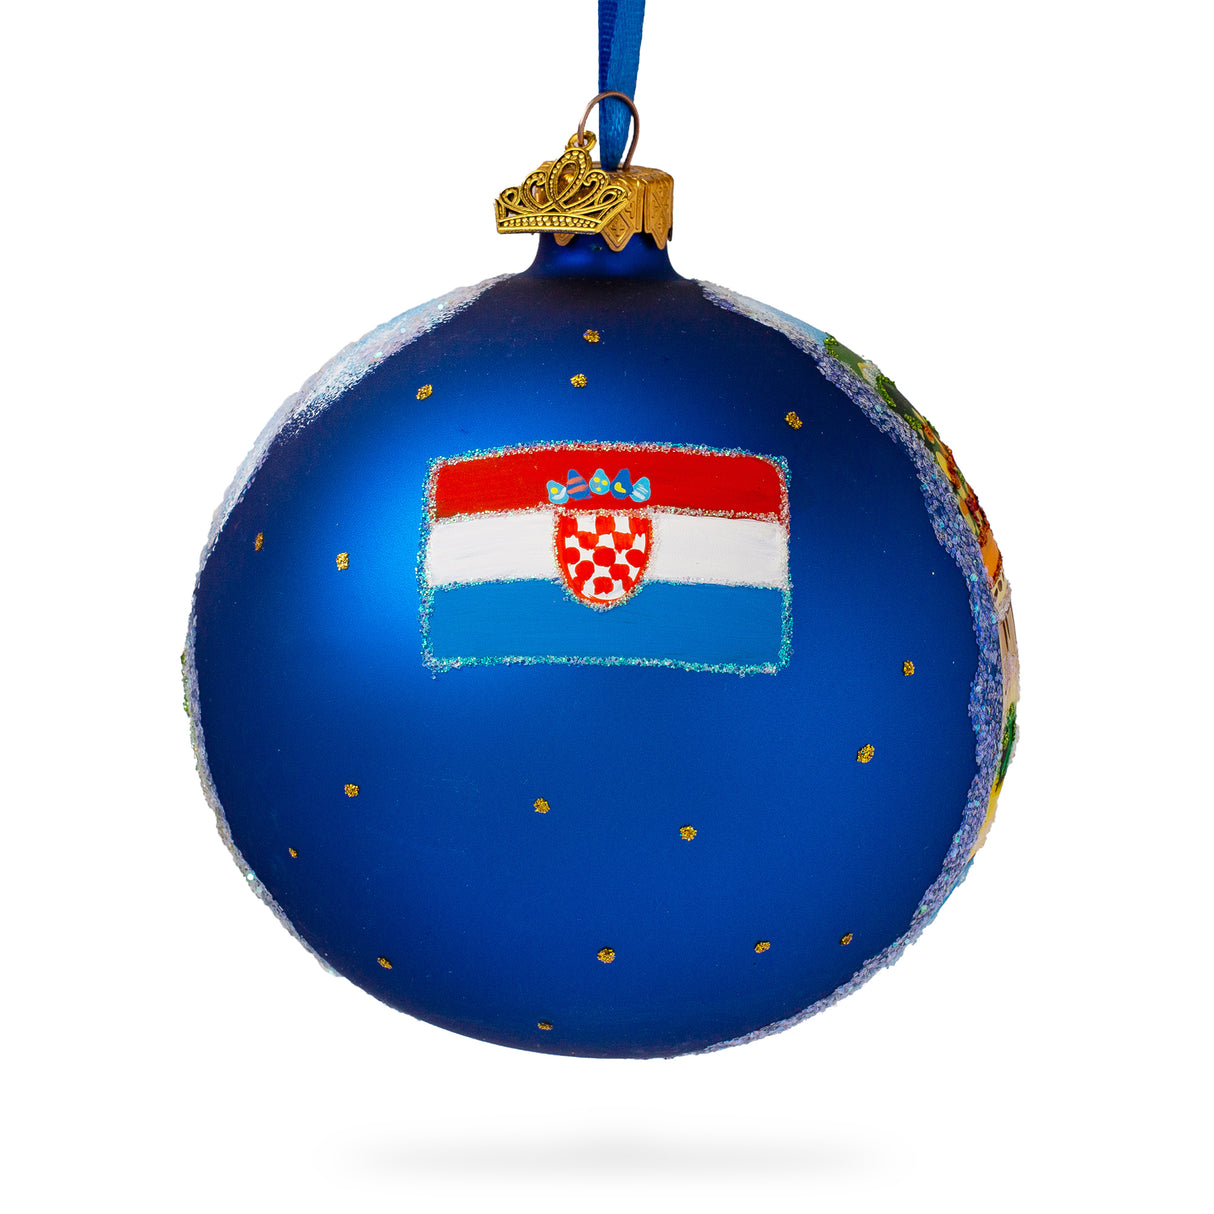 Buy Christmas Ornaments > Travel > Europe > Croatia by BestPysanky Online Gift Ship